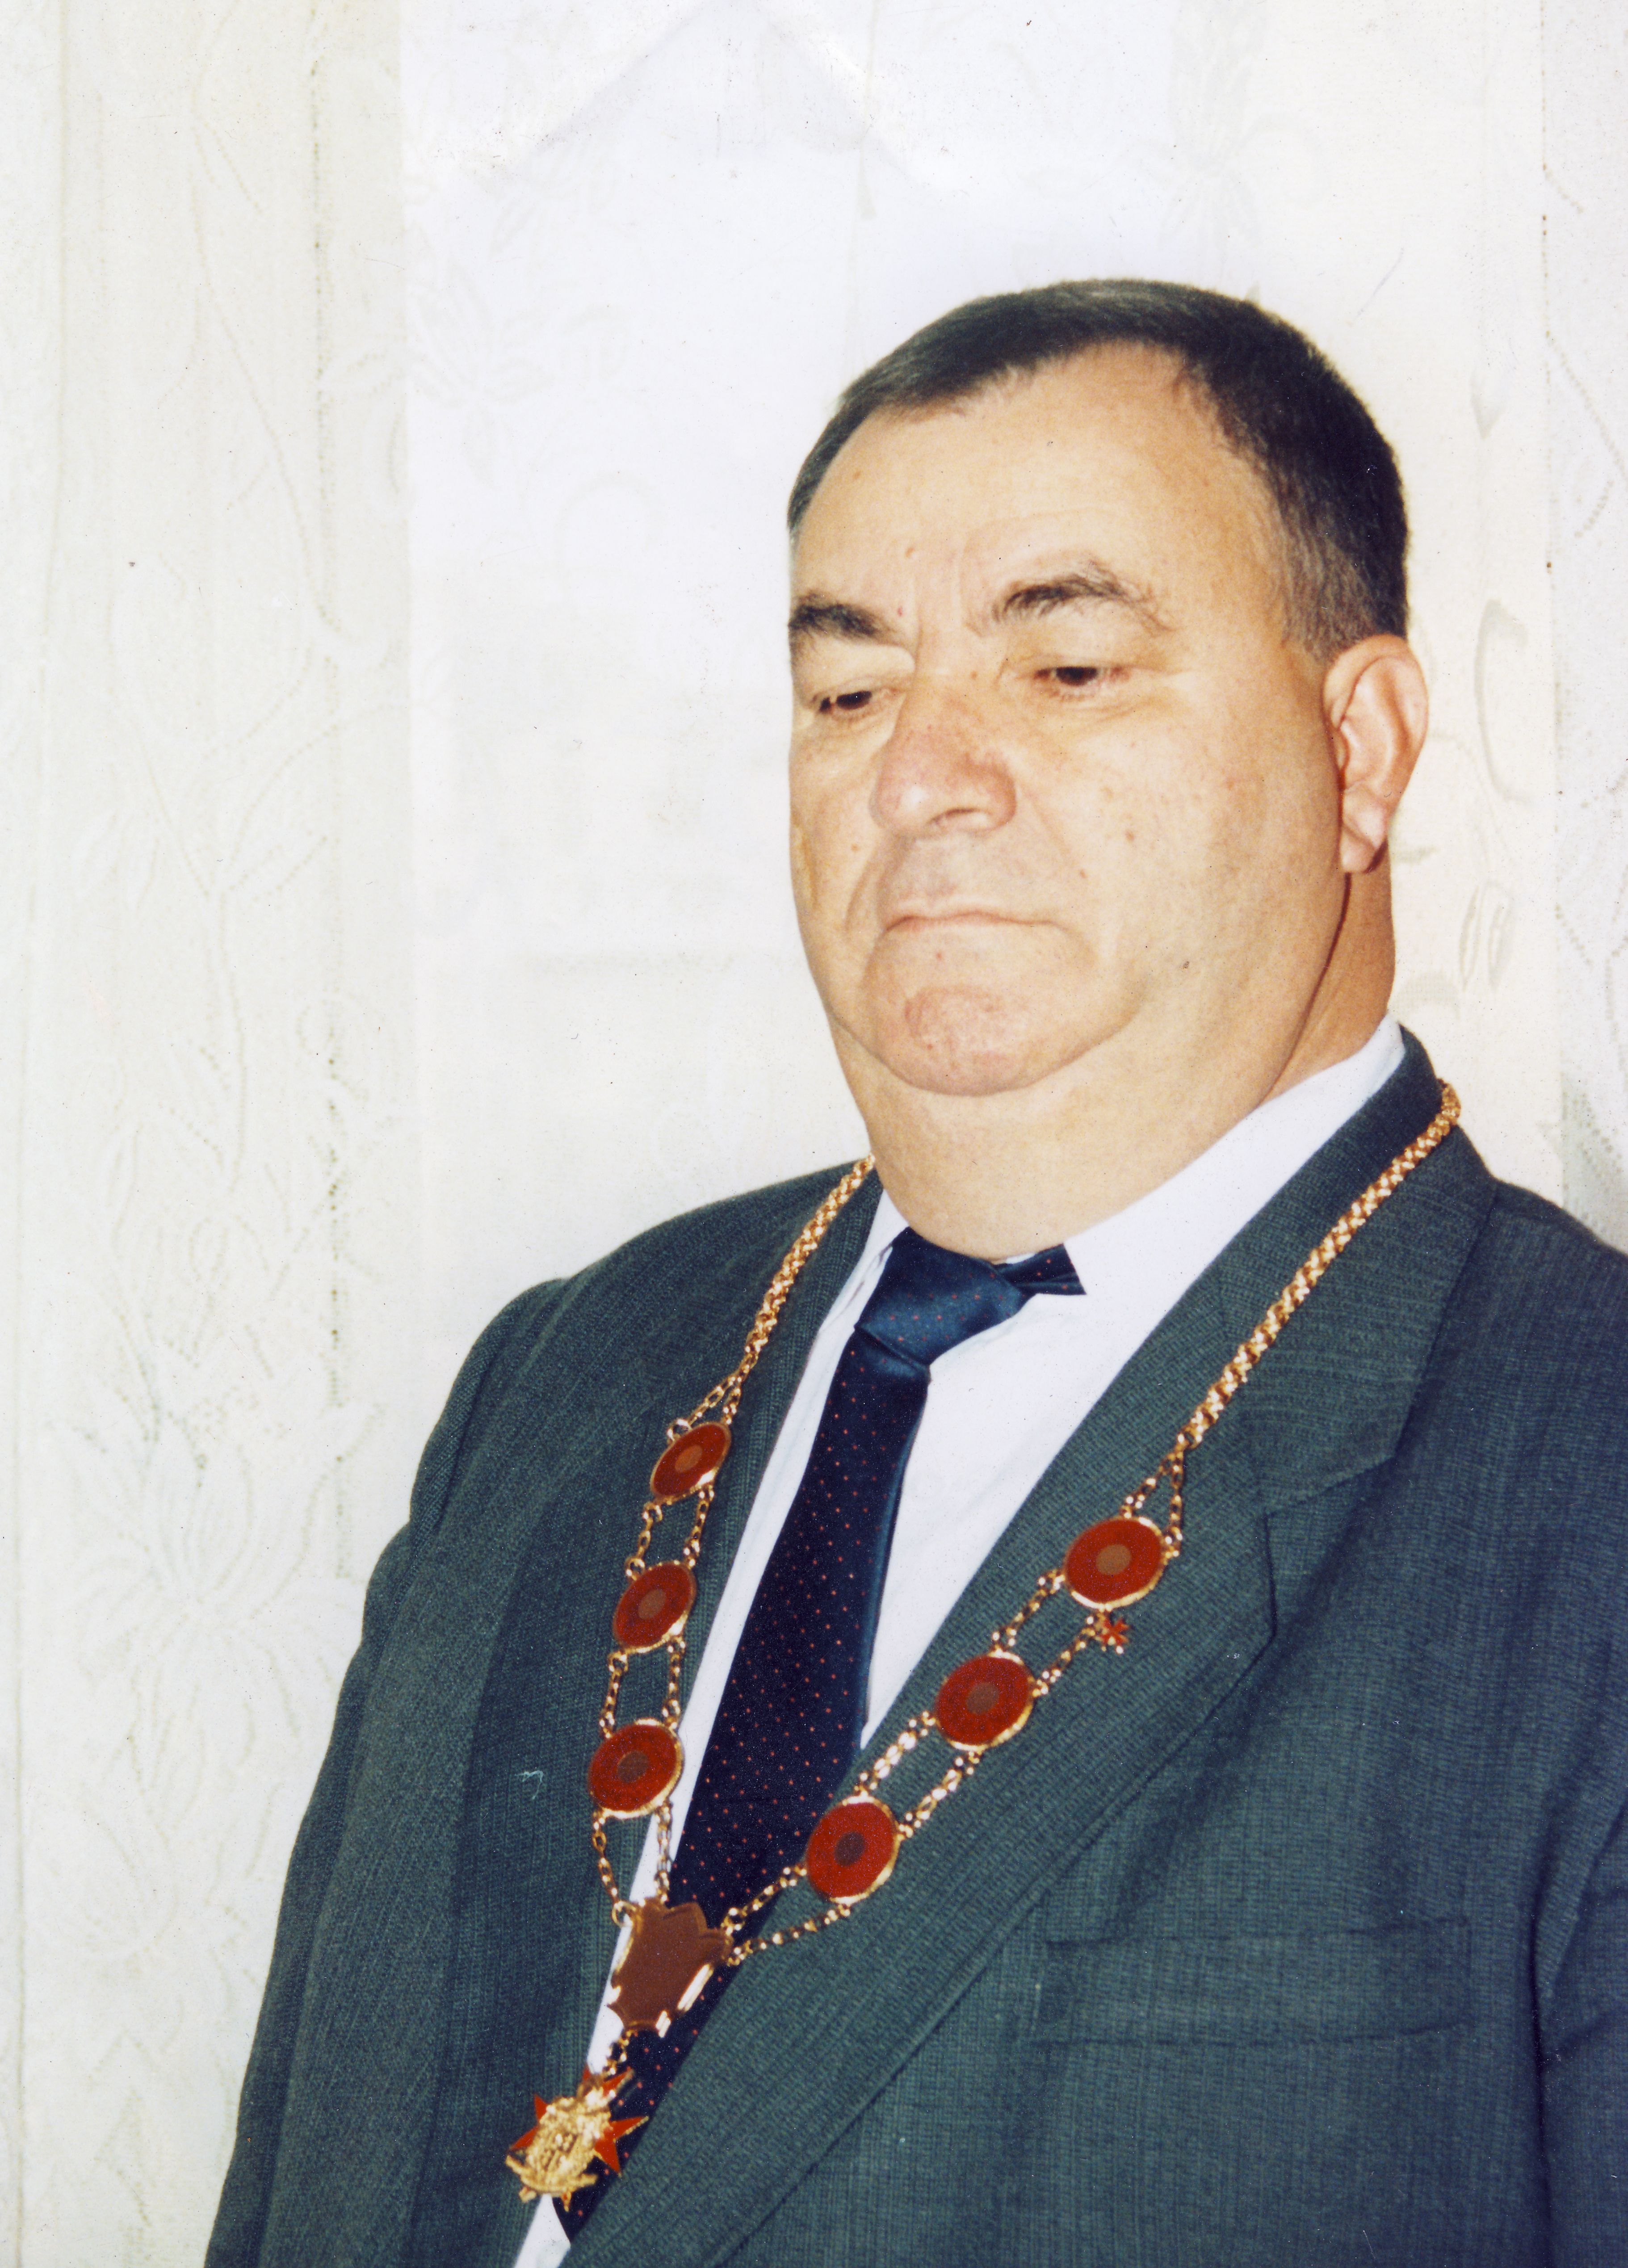 Ioan Cioaba a fost si pe vremea lui Ceausescu reprezentant al romilor